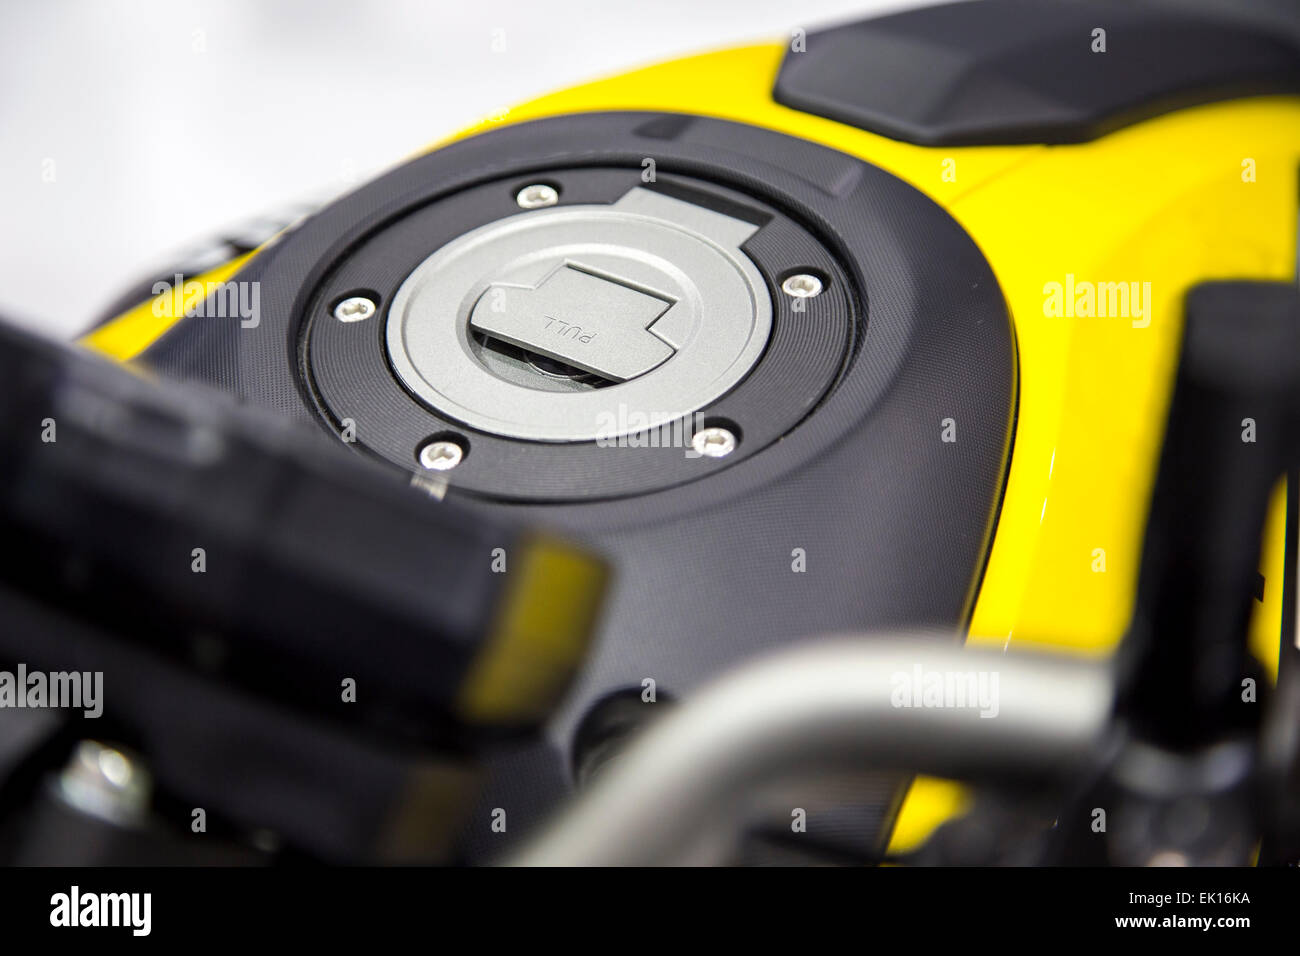 Immagine ravvicinata di un motociclo giallo coperchio serbatoio carburante cap Foto Stock